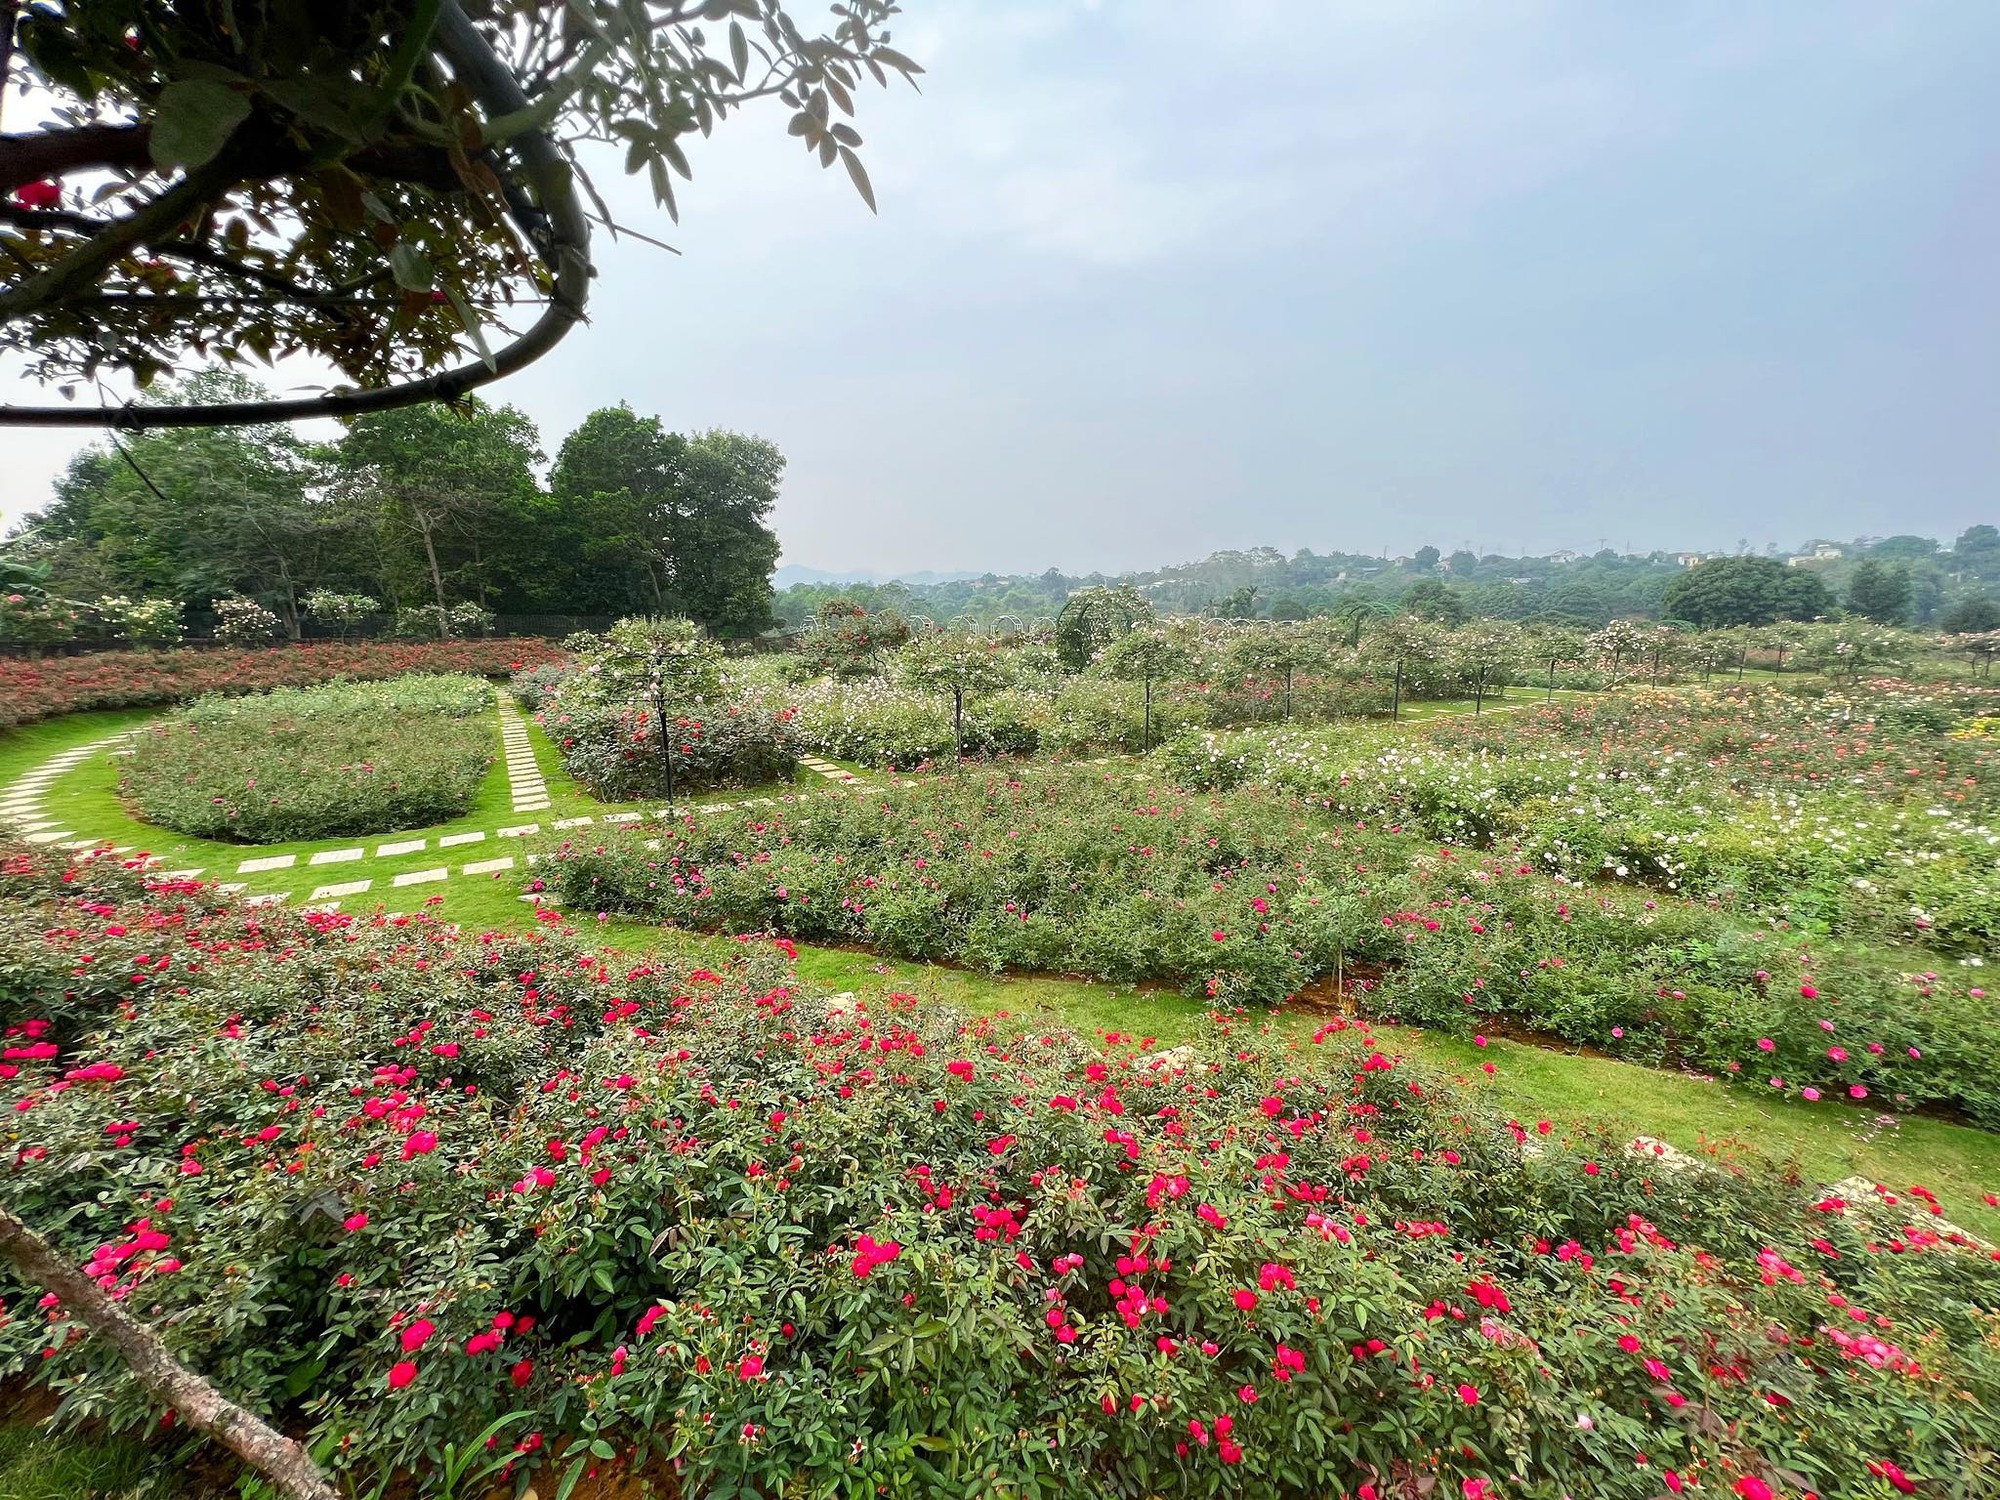 Mùng 3 Tết đến thăm vườn hồng rộng 6.000m² của người phụ nữ Hà Nội - Ảnh 1.